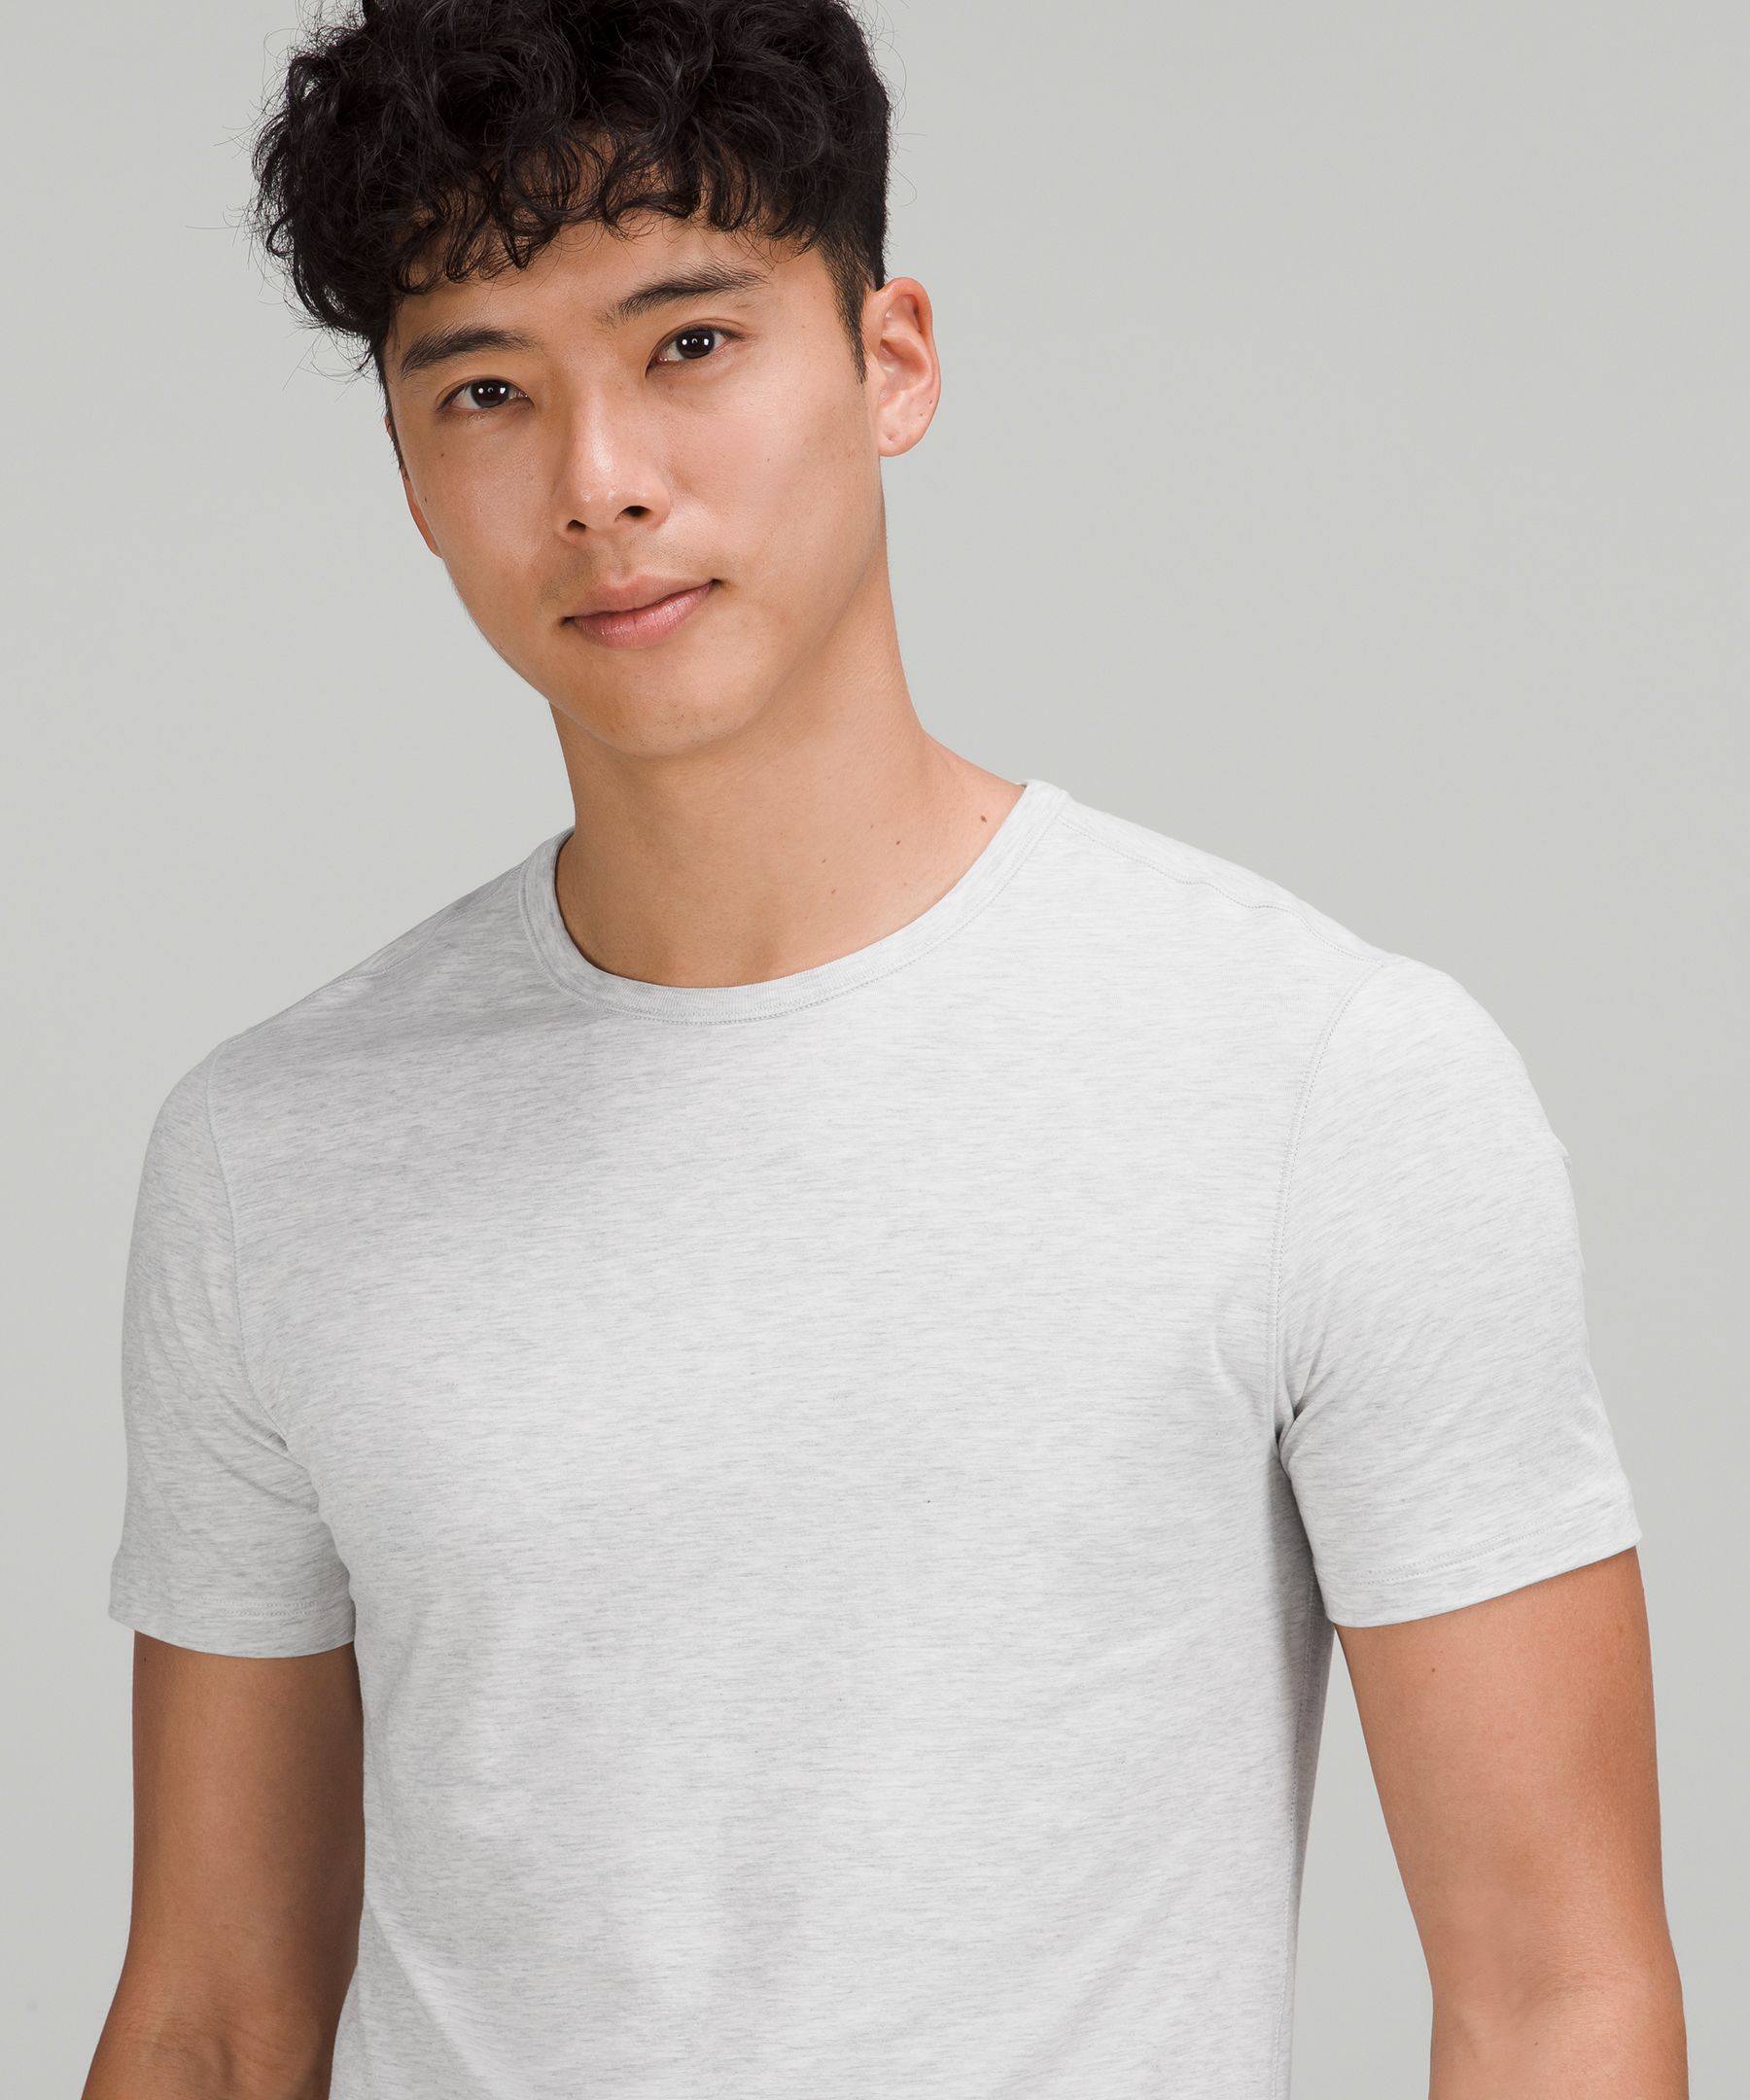 aan de andere kant, Hoofd Van streek 5 Year Basic T-Shirt *5 Pack | Men's Short Sleeve Shirts & Tee's | lululemon